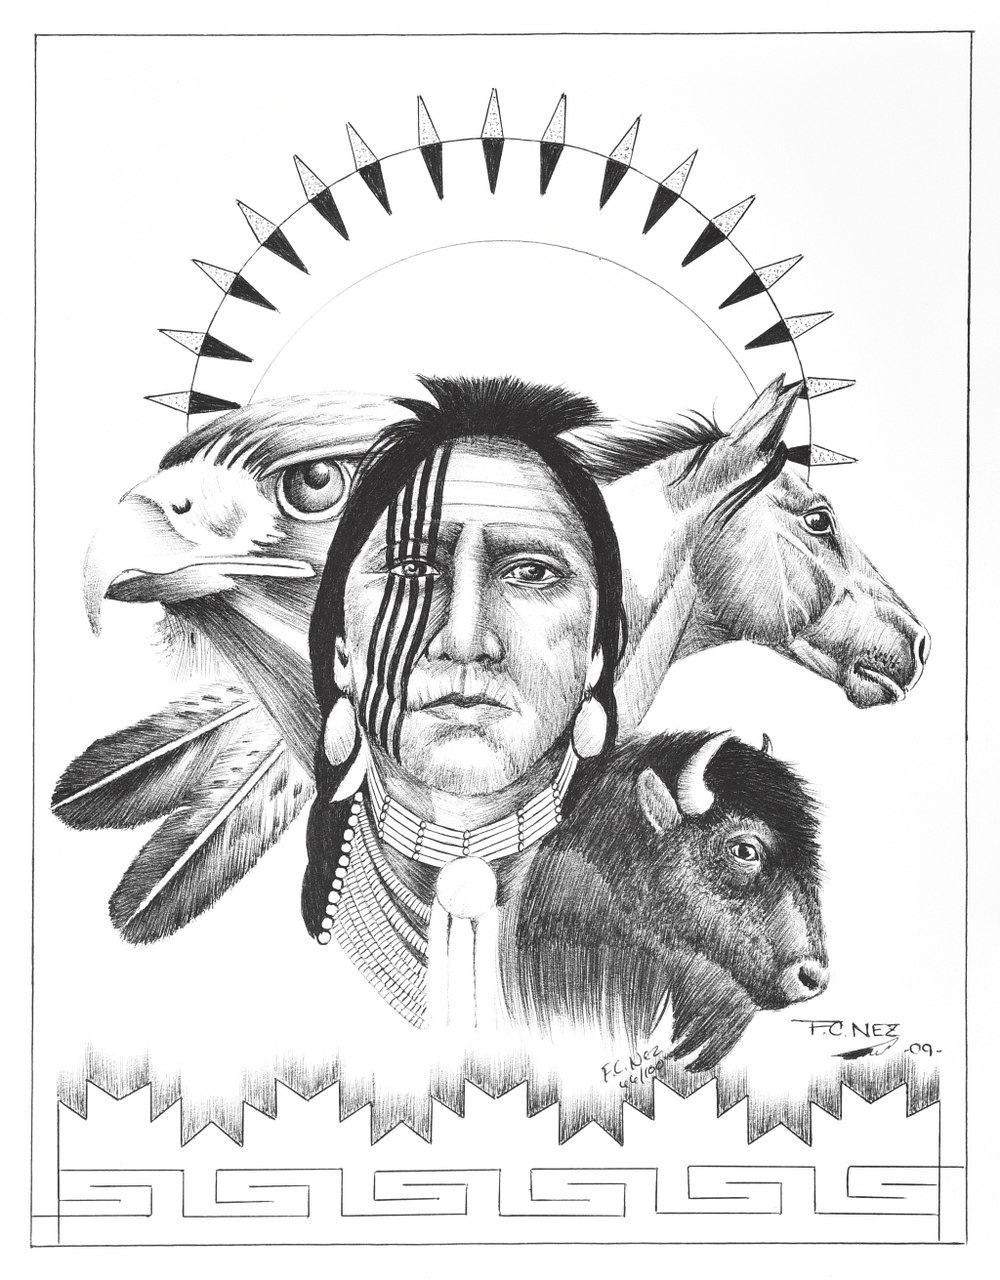 Navajo Drawings at Explore collection of Navajo